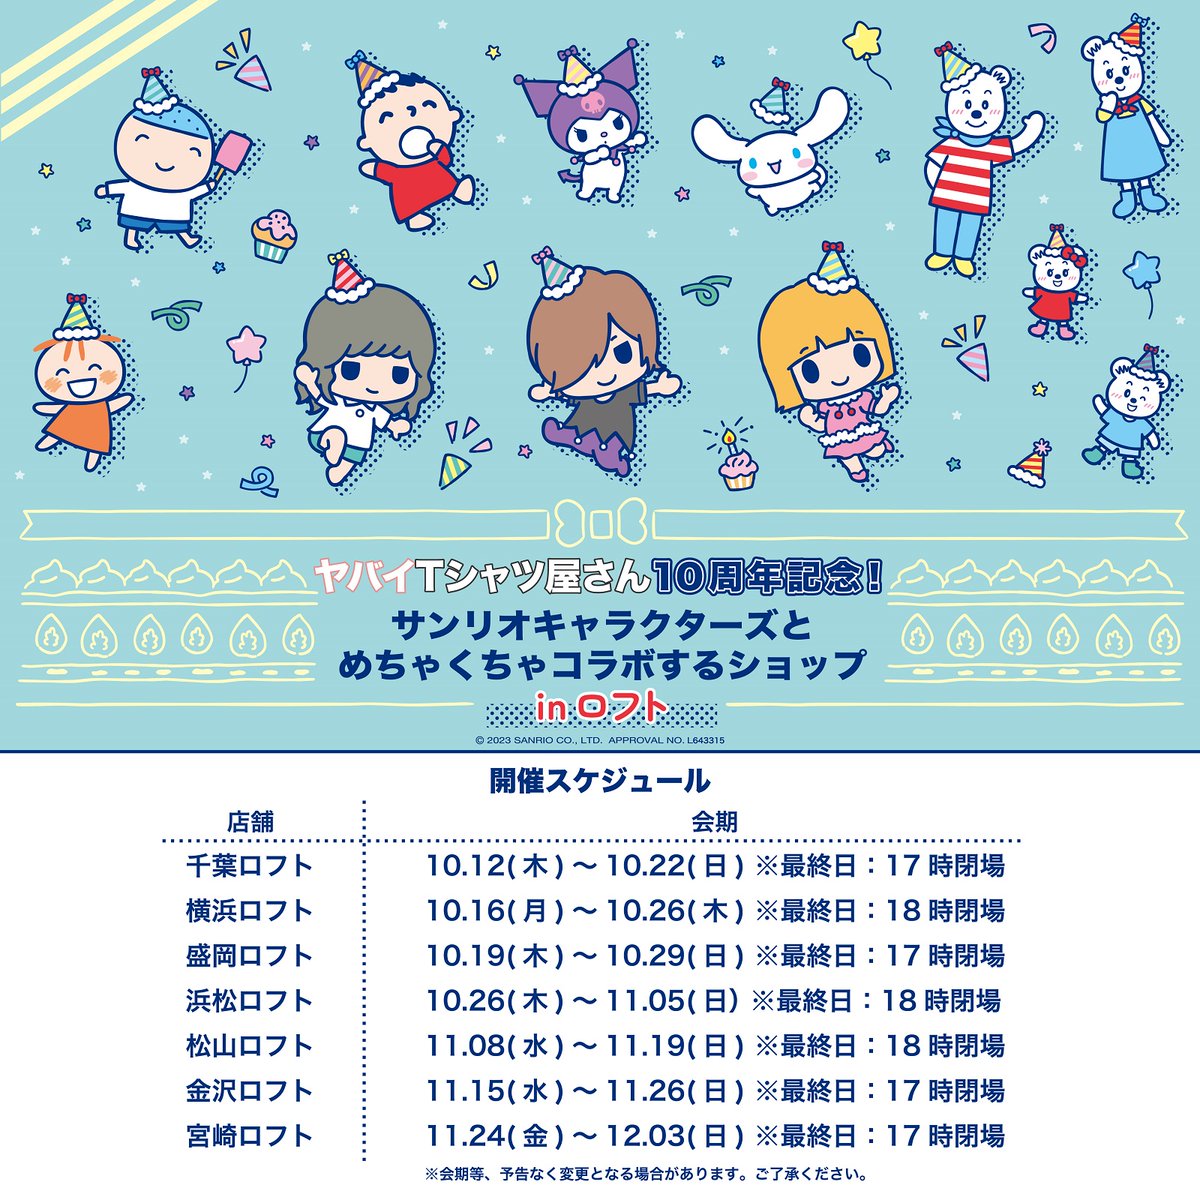 ヤバイTシャツ屋さん × サンリオ in ロフト7店舗 10月12日より巡回開催!